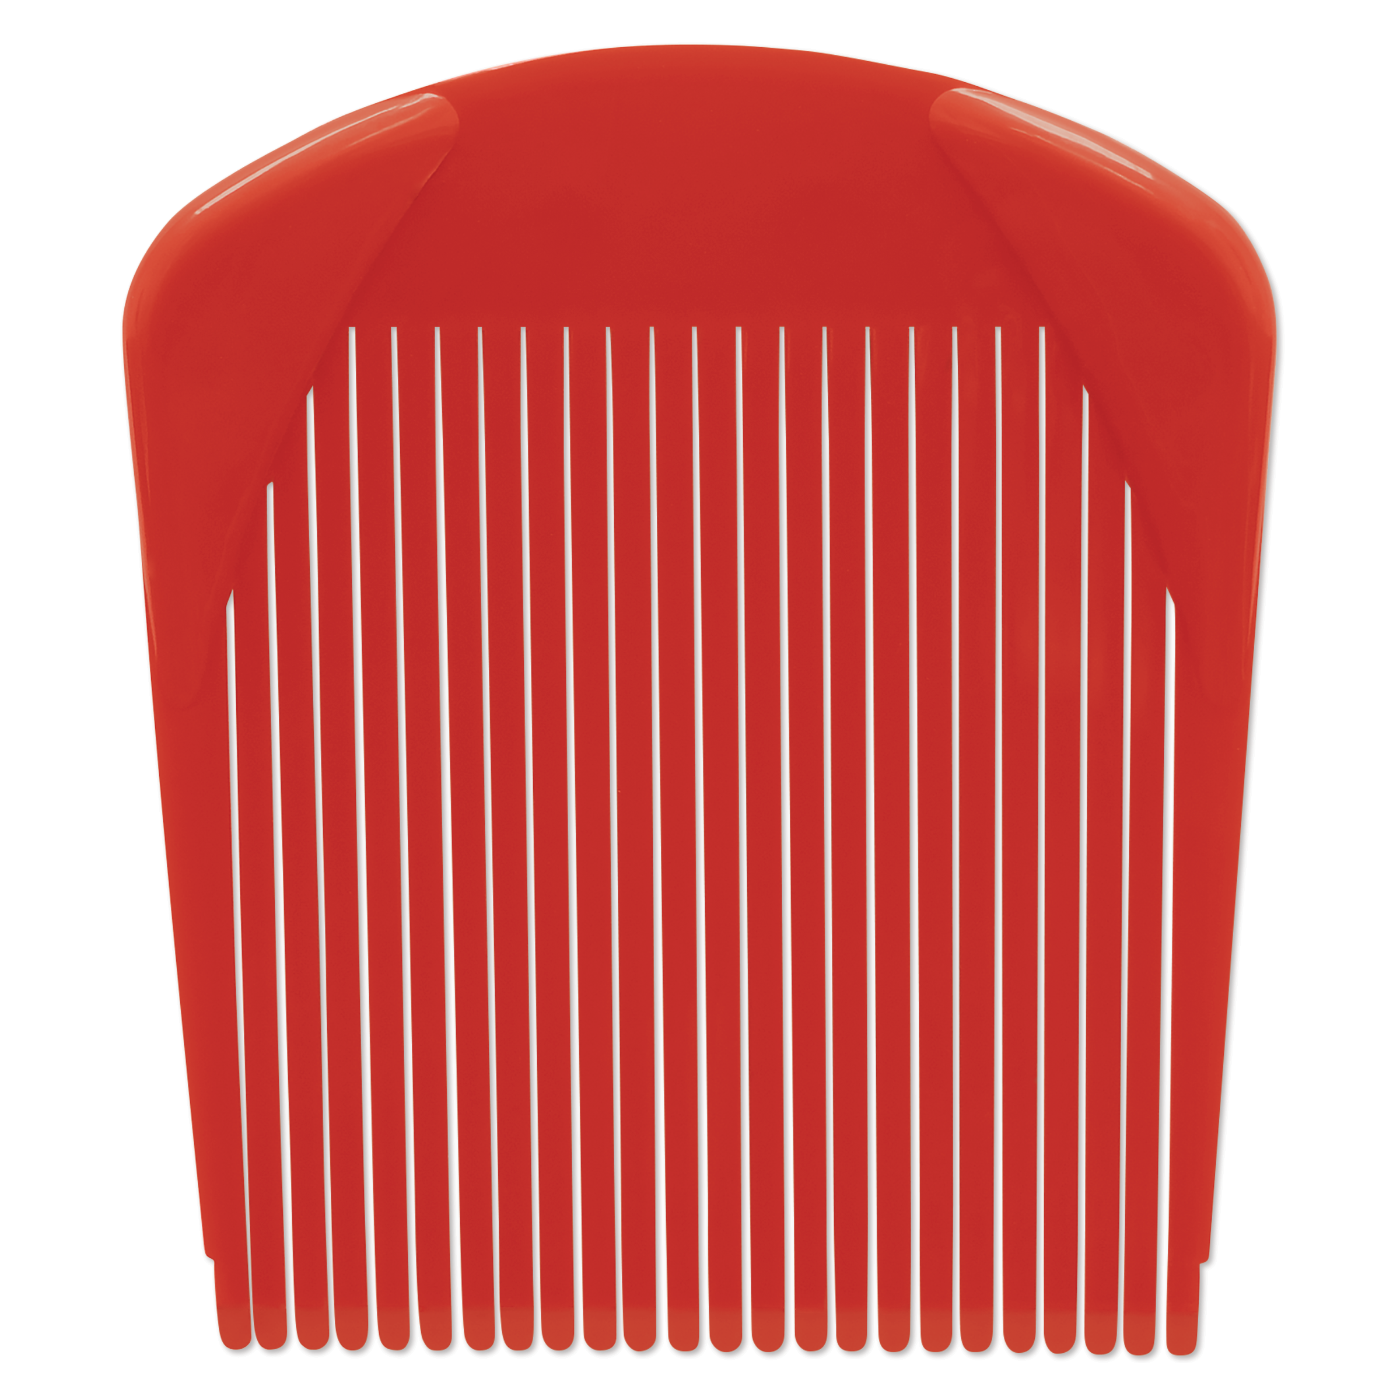 Blending Flat Top Comb